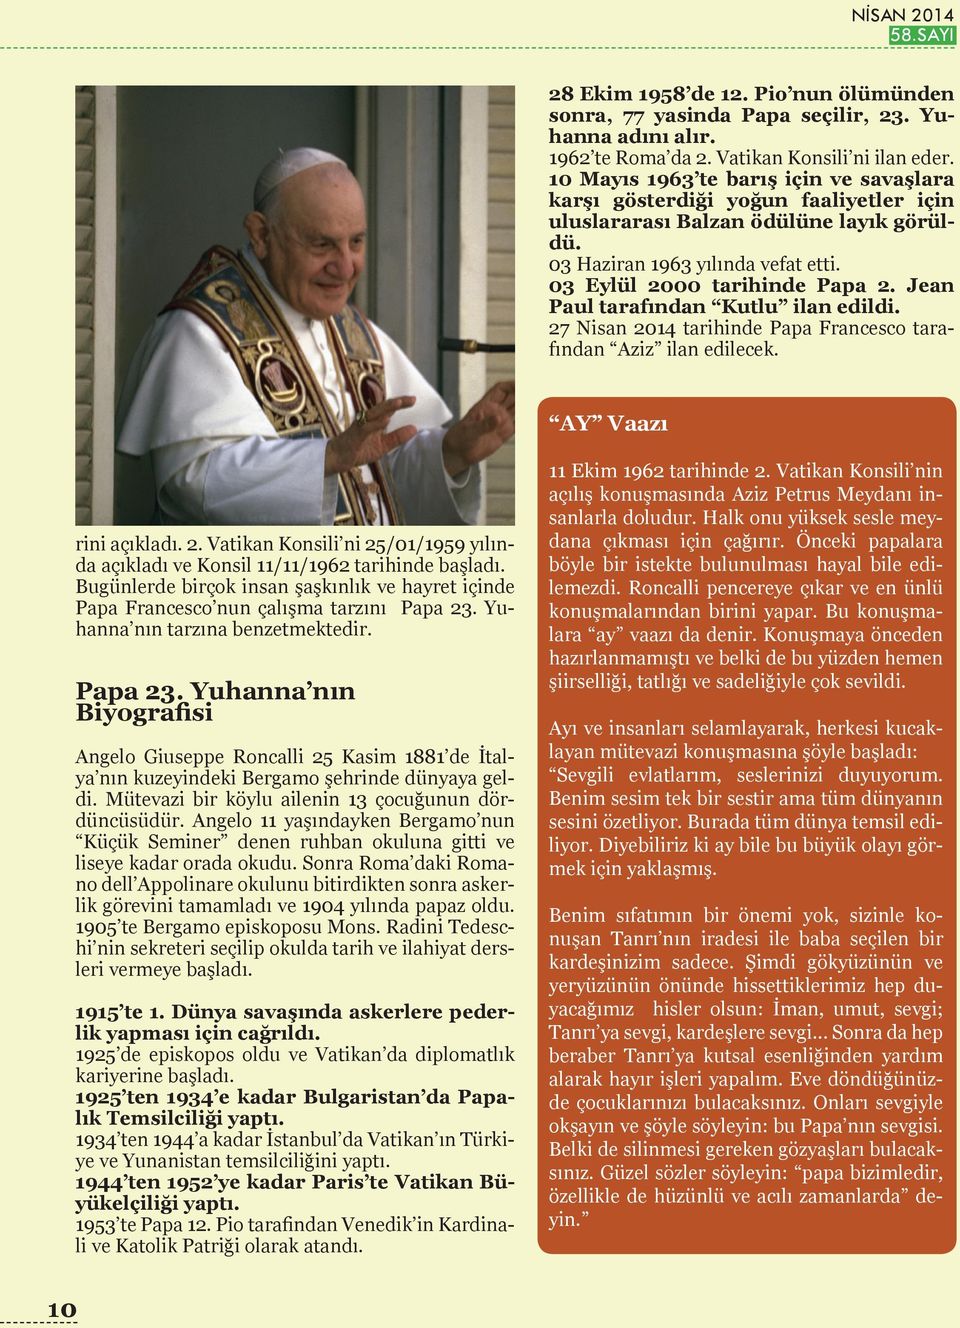 Jean Paul tarafından Kutlu ilan edildi. 27 Nisan 2014 tarihinde Papa Francesco tarafından Aziz ilan edilecek. AY Vaazı rini açıkladı. 2. Vatikan Konsili ni 25/01/1959 yılında açıkladı ve Konsil 11/11/1962 tarihinde başladı.